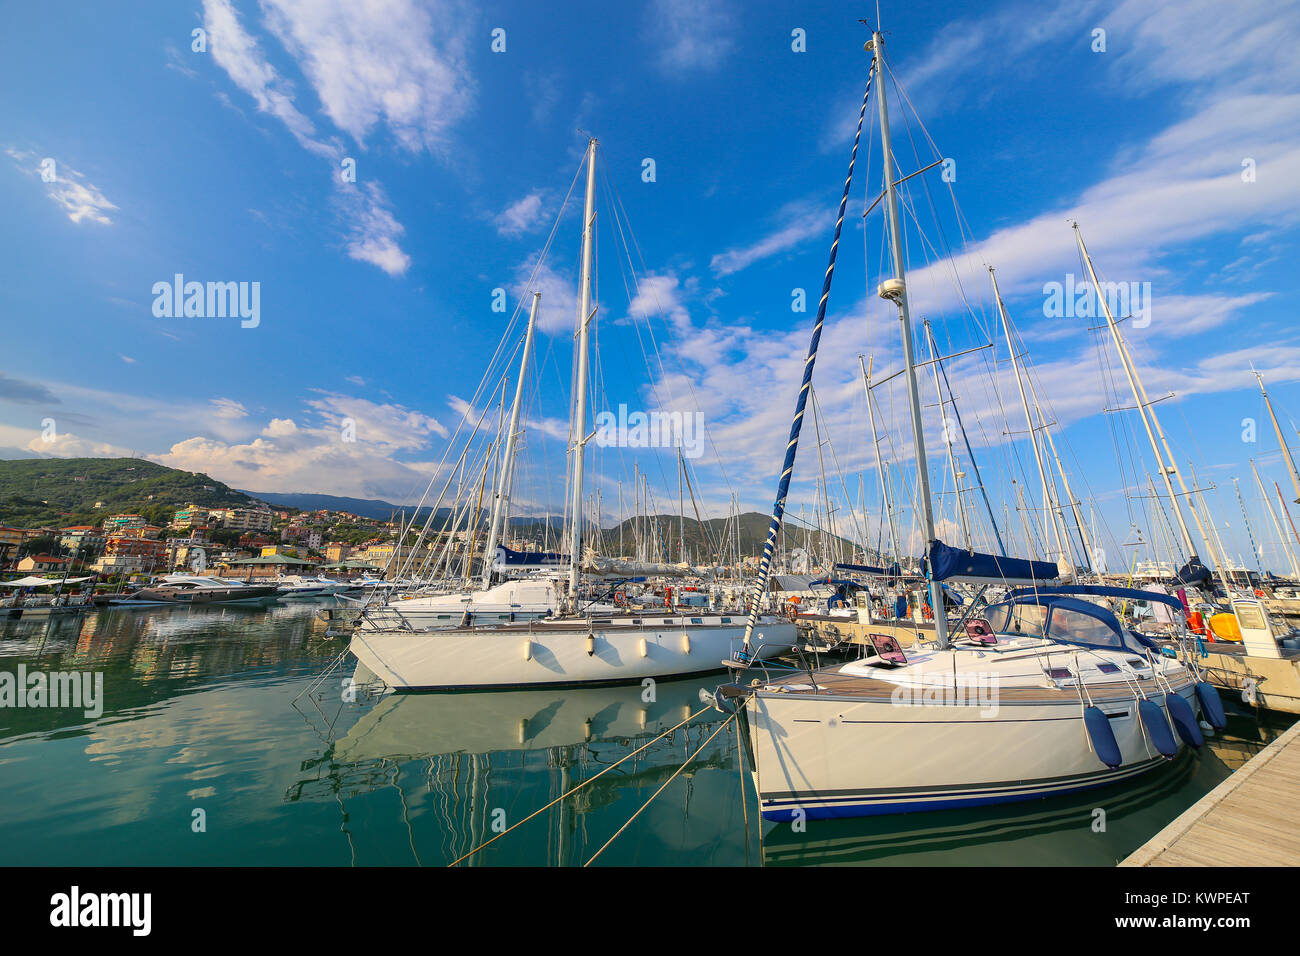 View of Varazze Marina in Liguria, Italy Stock Photo